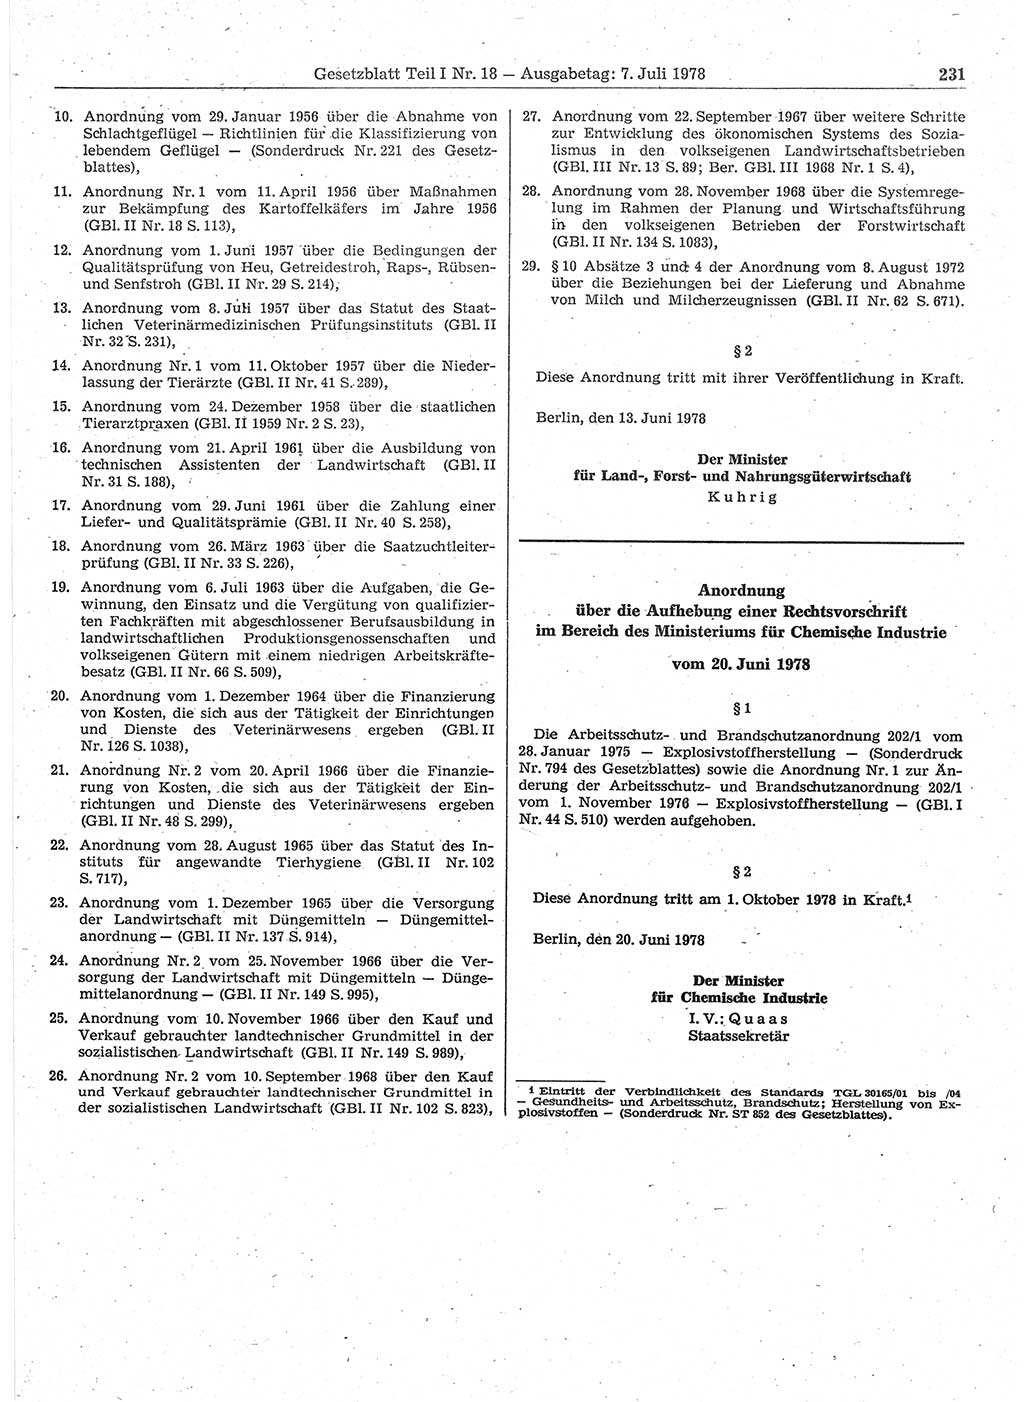 Gesetzblatt (GBl.) der Deutschen Demokratischen Republik (DDR) Teil Ⅰ 1978, Seite 231 (GBl. DDR Ⅰ 1978, S. 231)